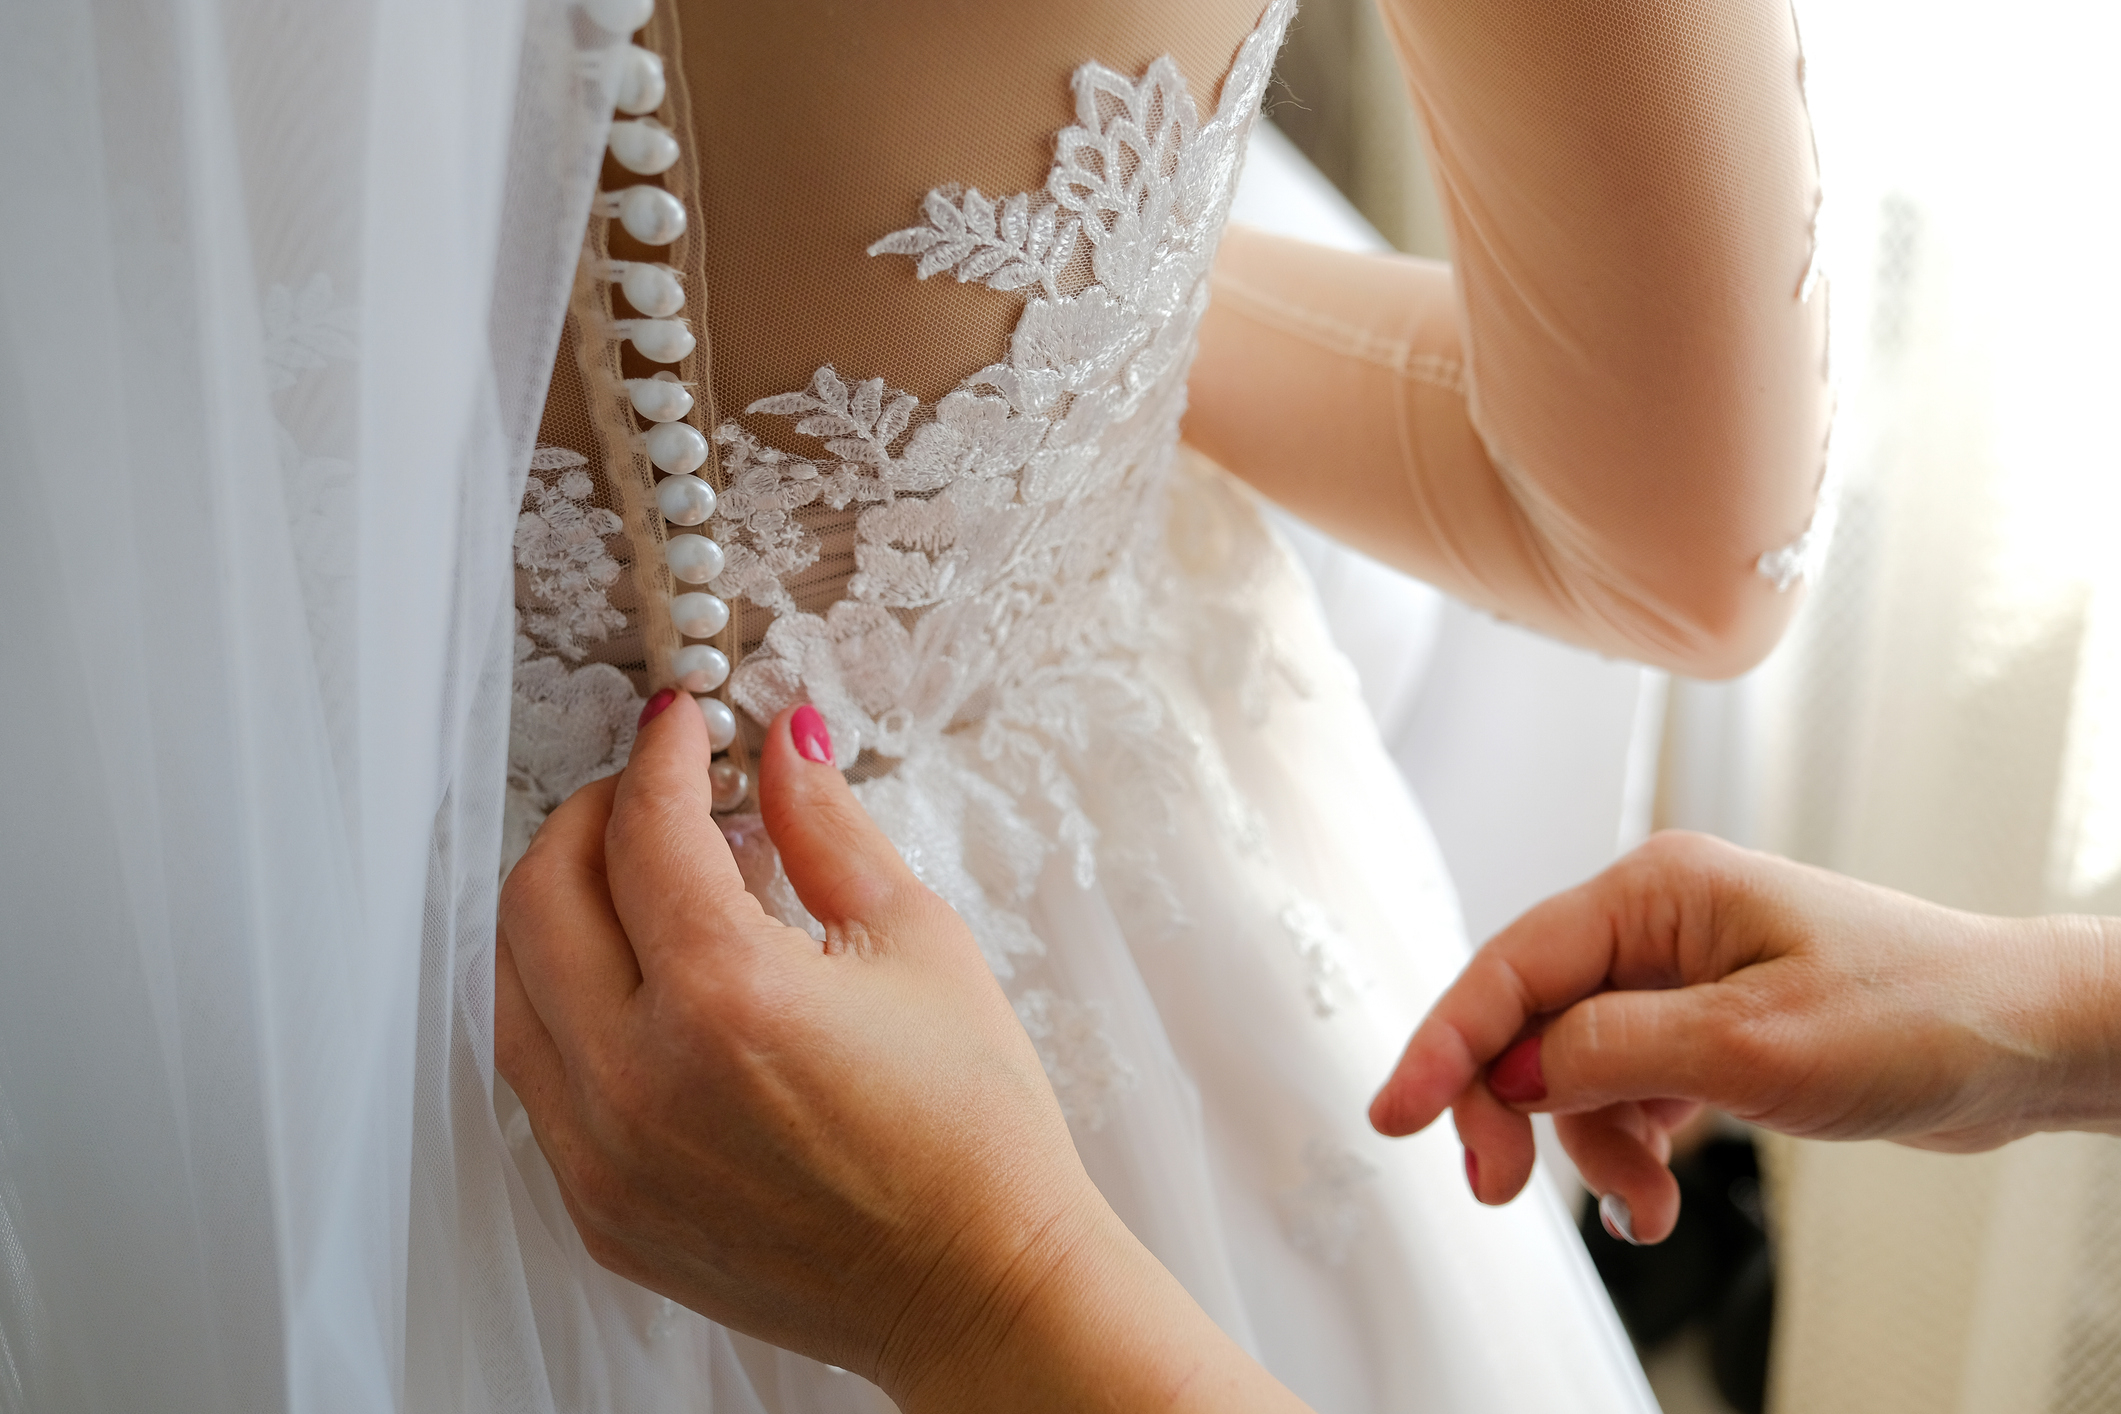 hands buttoning a wedding dress